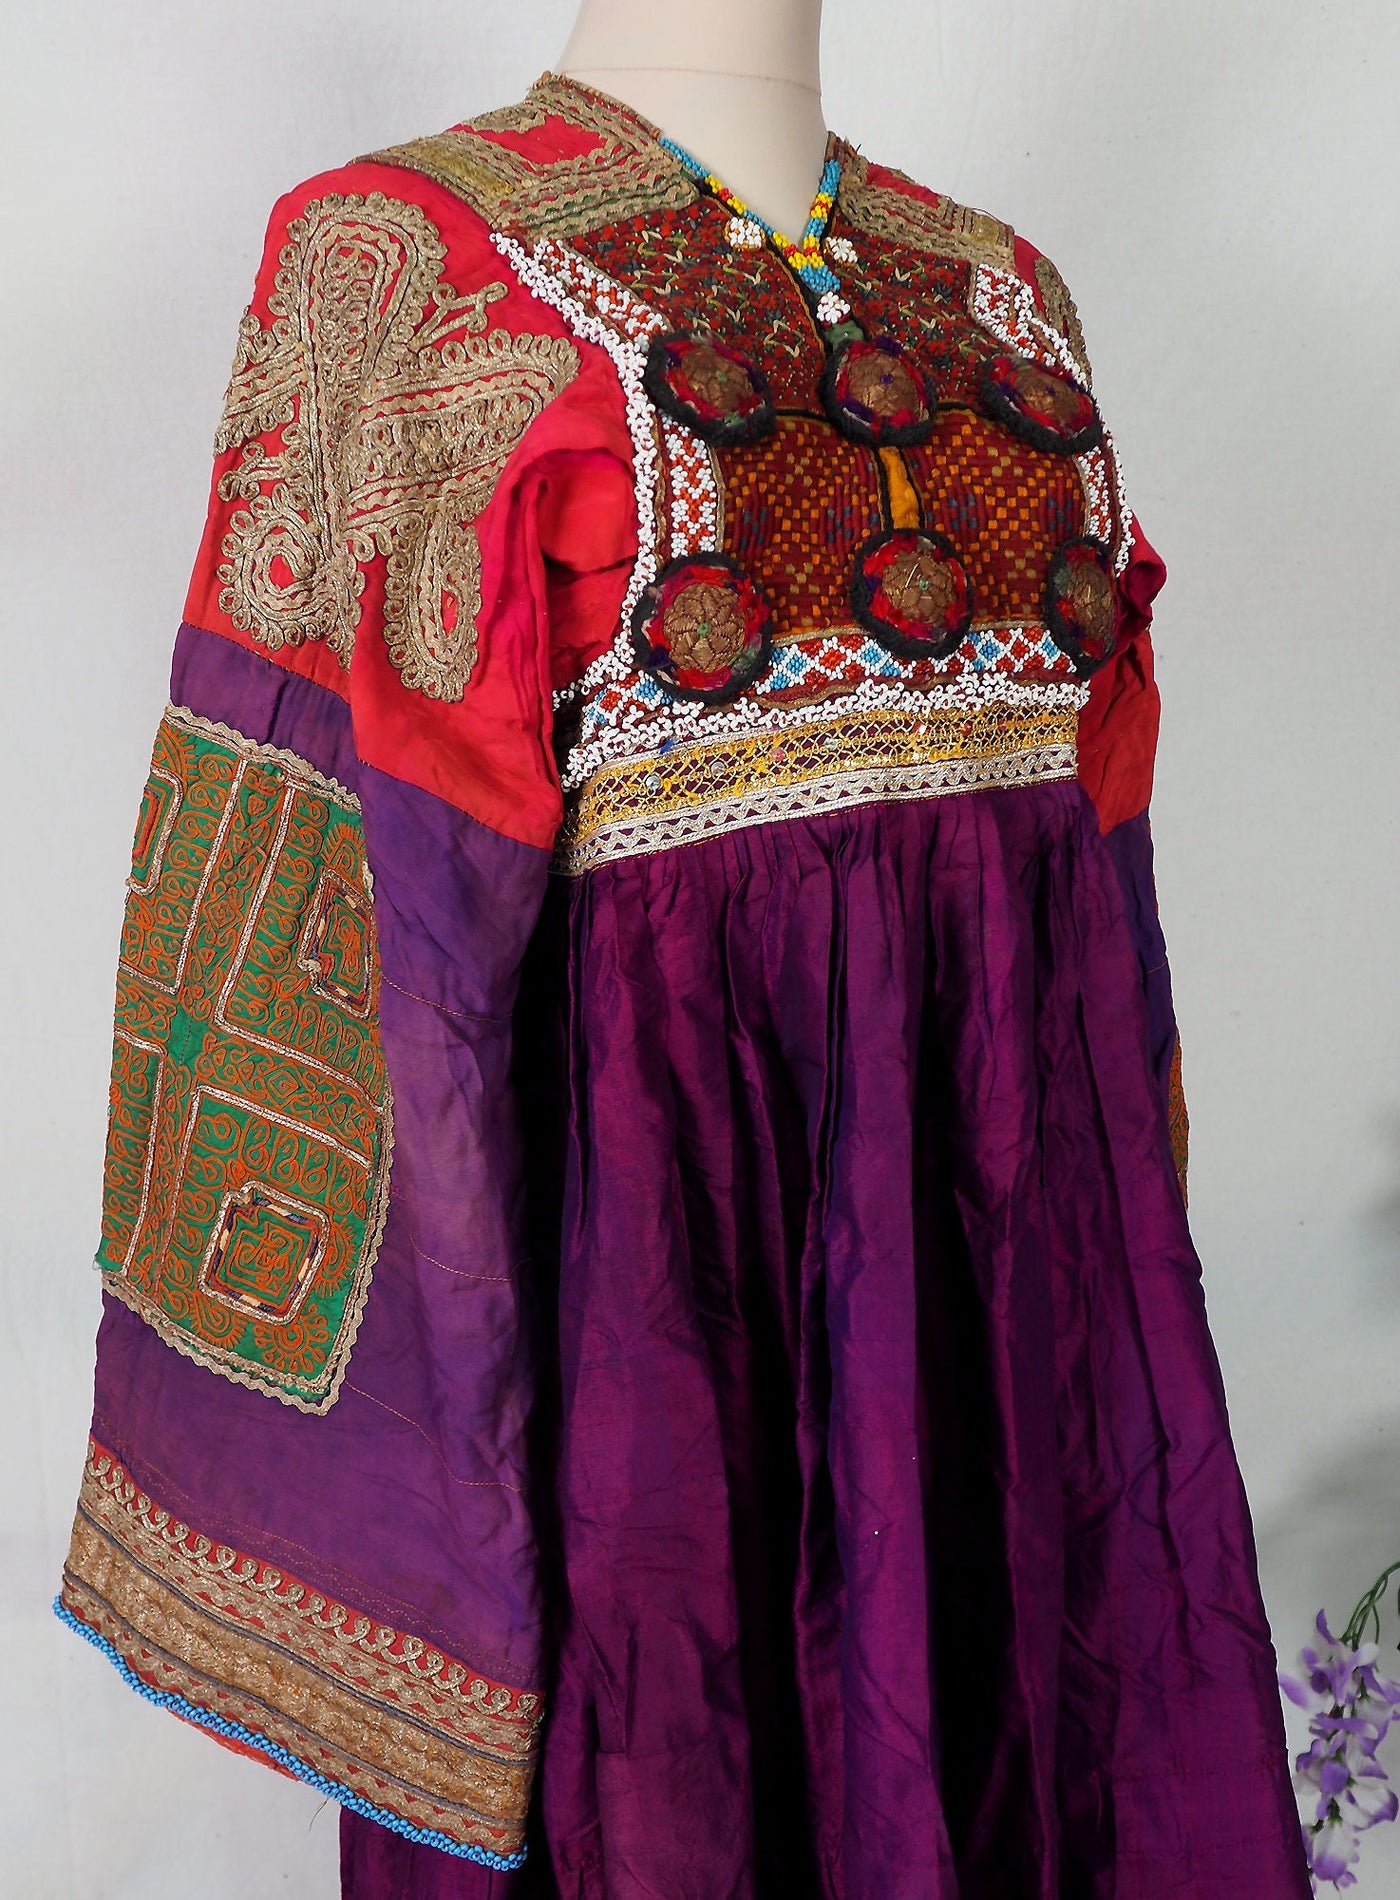 antik Orient Nomaden kuchi frauen Hochzeit Tracht afghan seiden kleid afghanistan hand bestickte kostüm Nr-21/9  Orientsbazar   